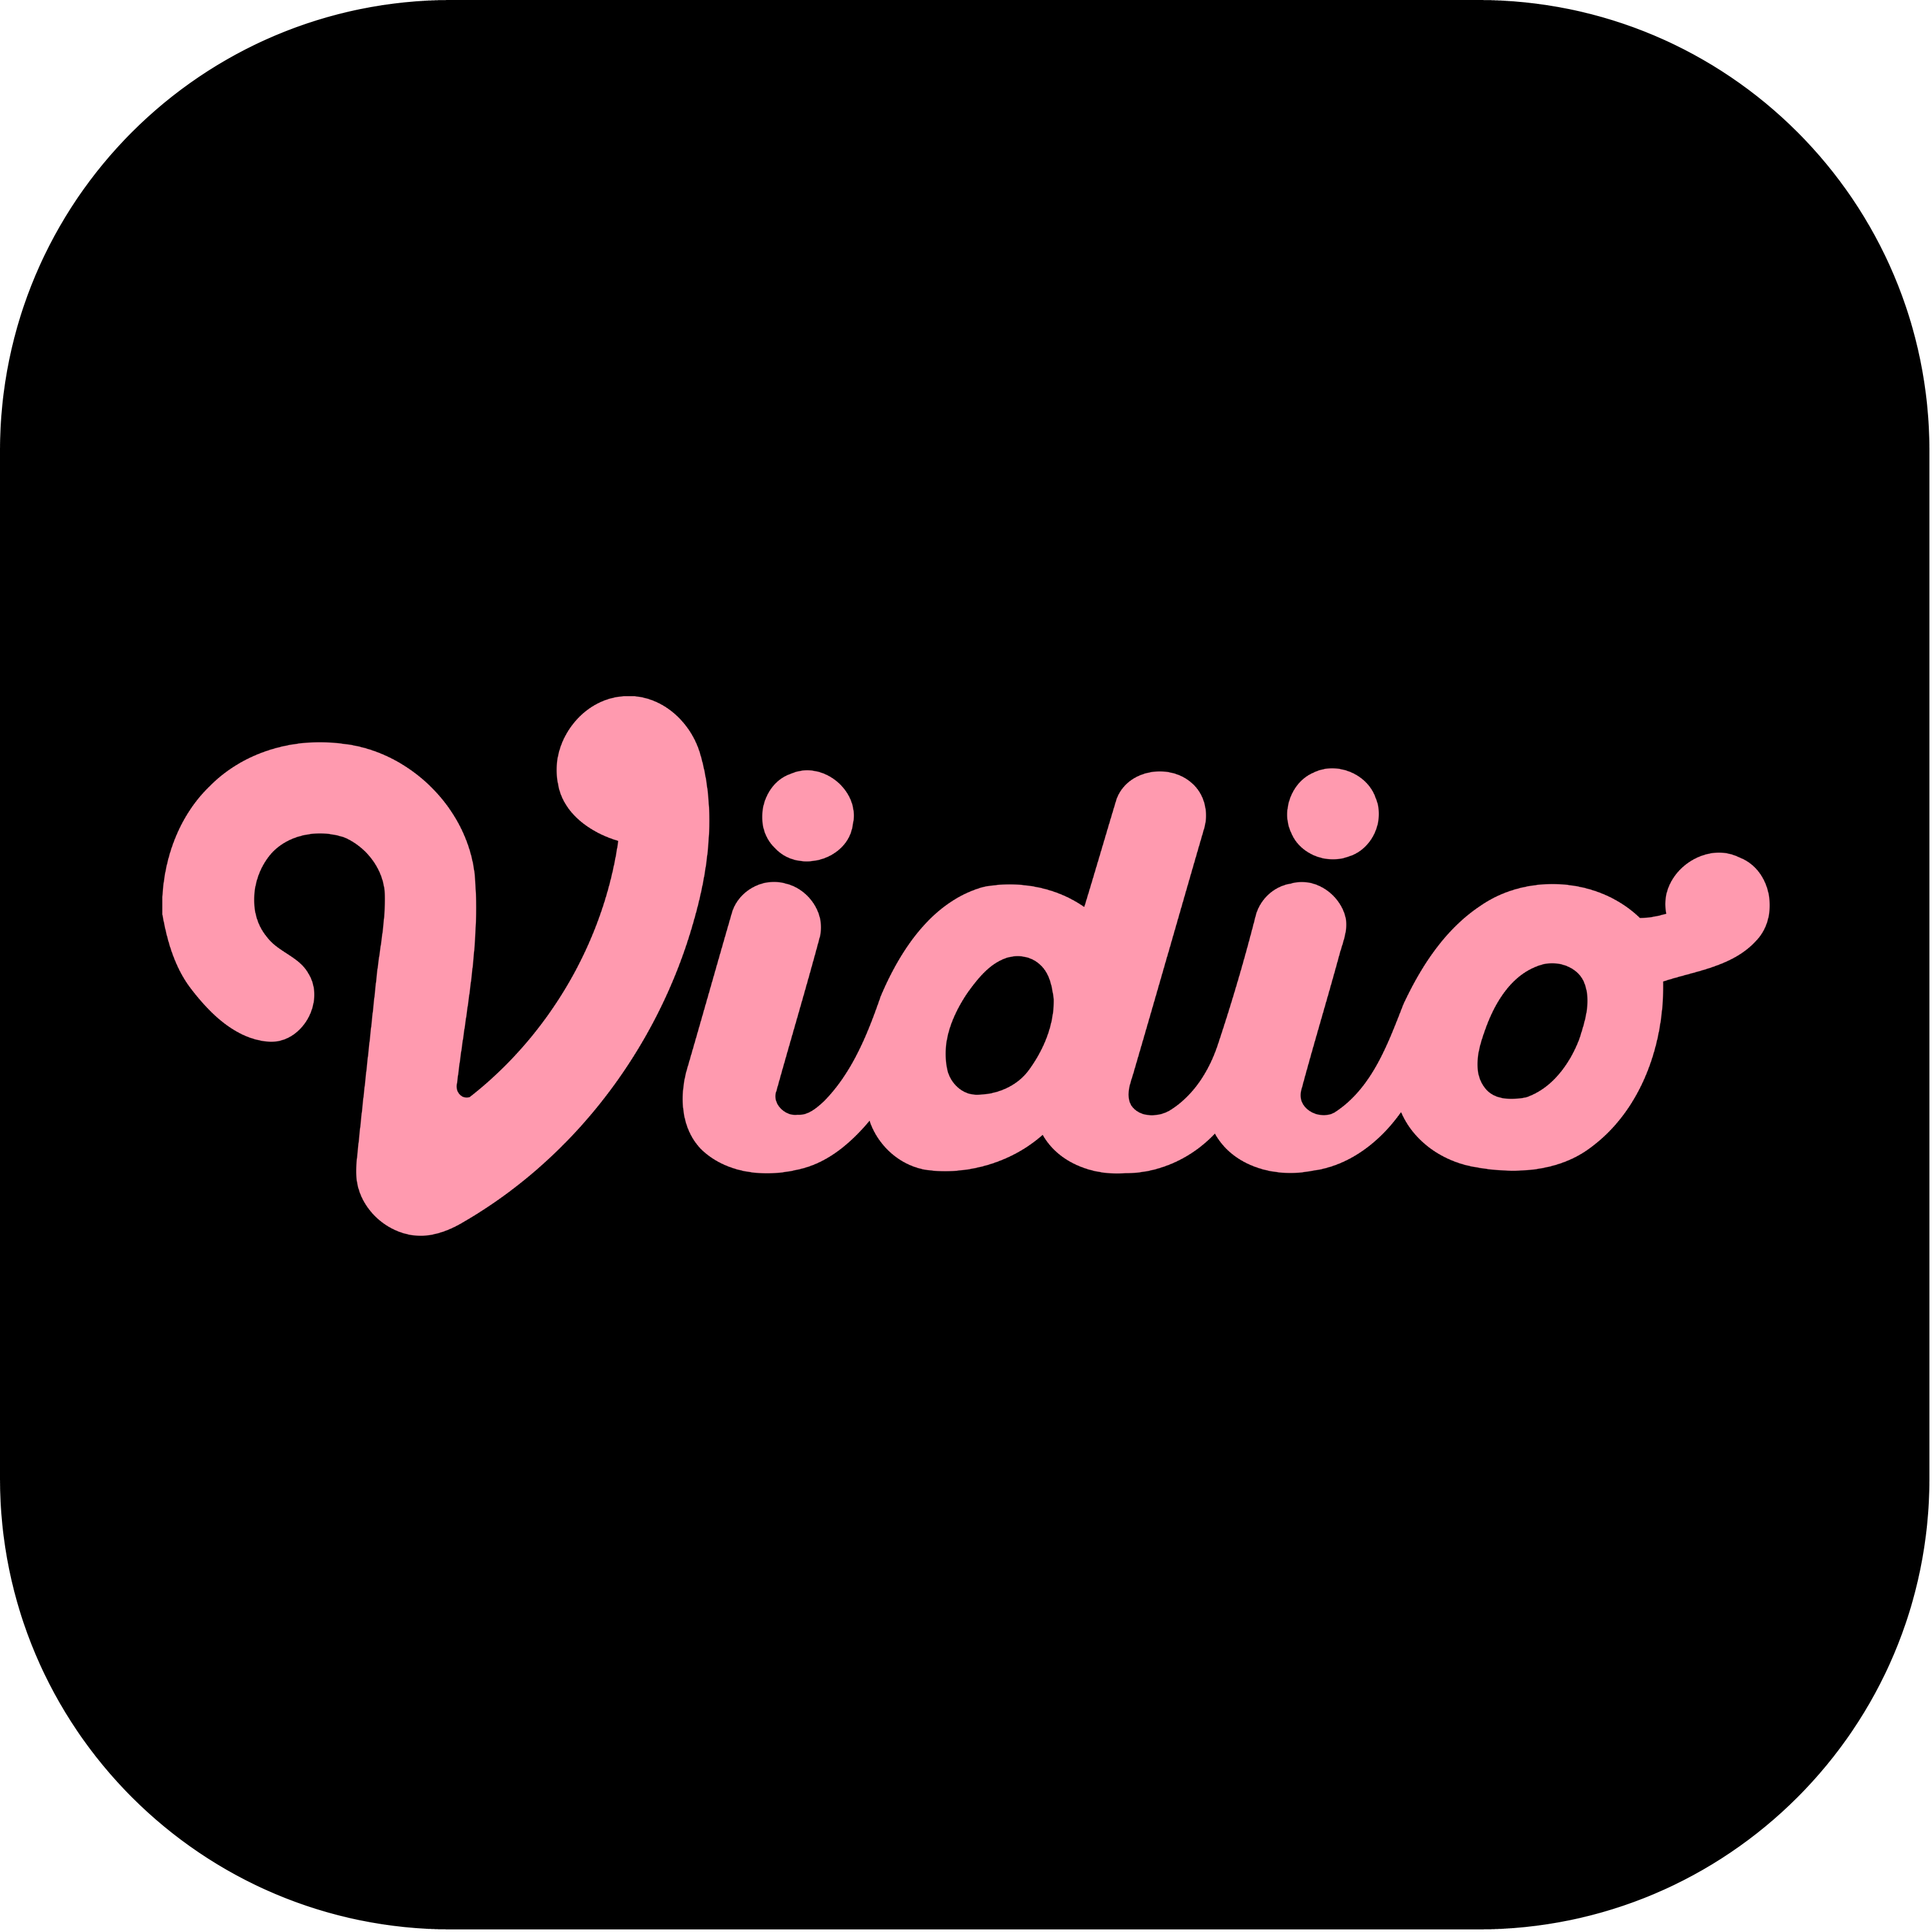 Vidio Logo Transparent Picture